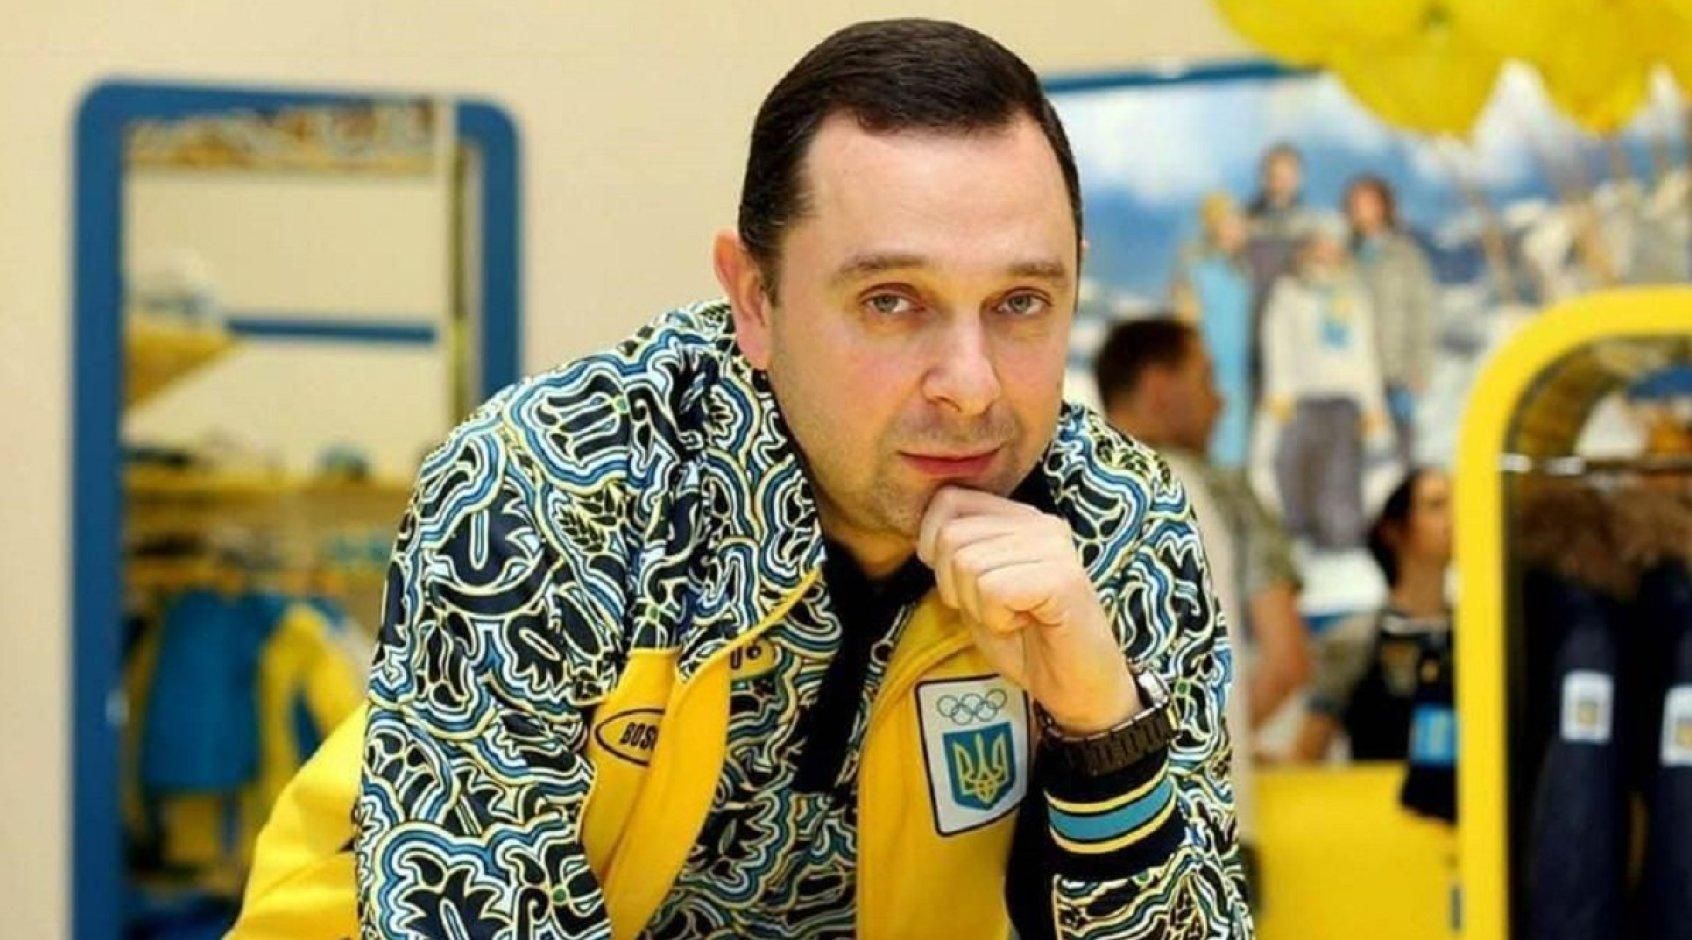 "Задніх пасти не будемо": міністр спорту України дав медальний прогноз на Олімпіаду-2020